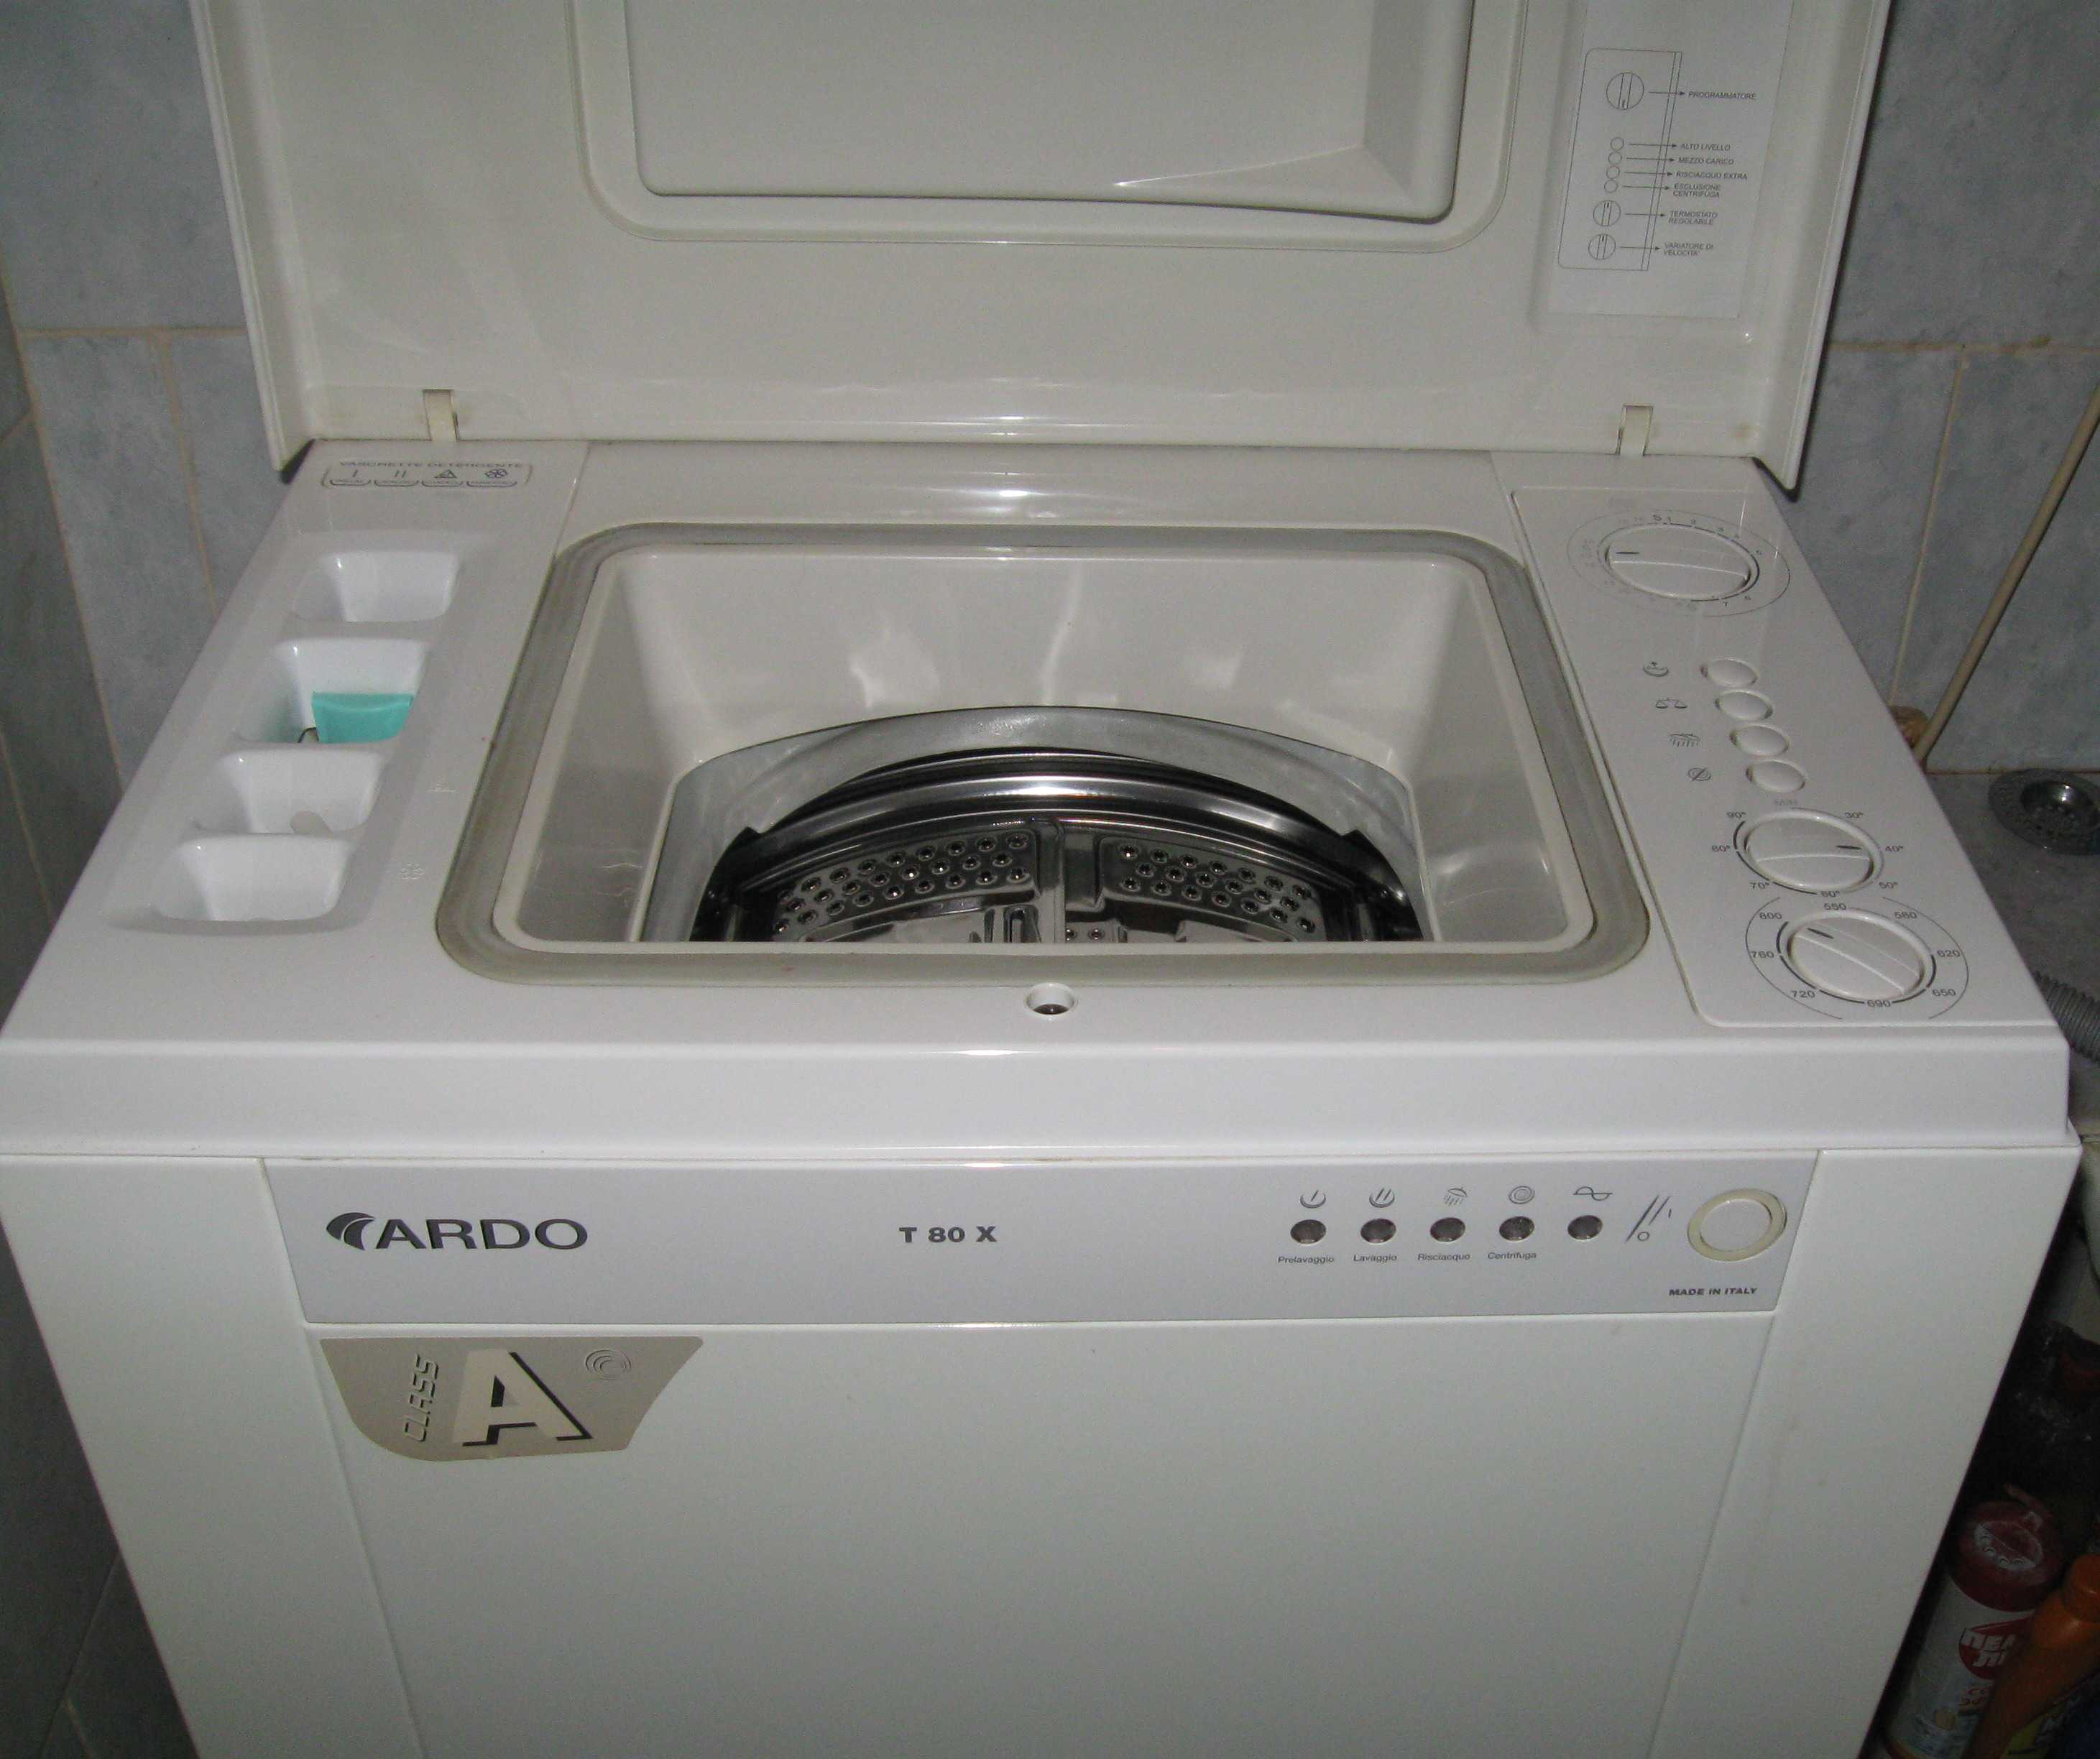 Неисправности стиральных машин ардо с вертикальной загрузкой